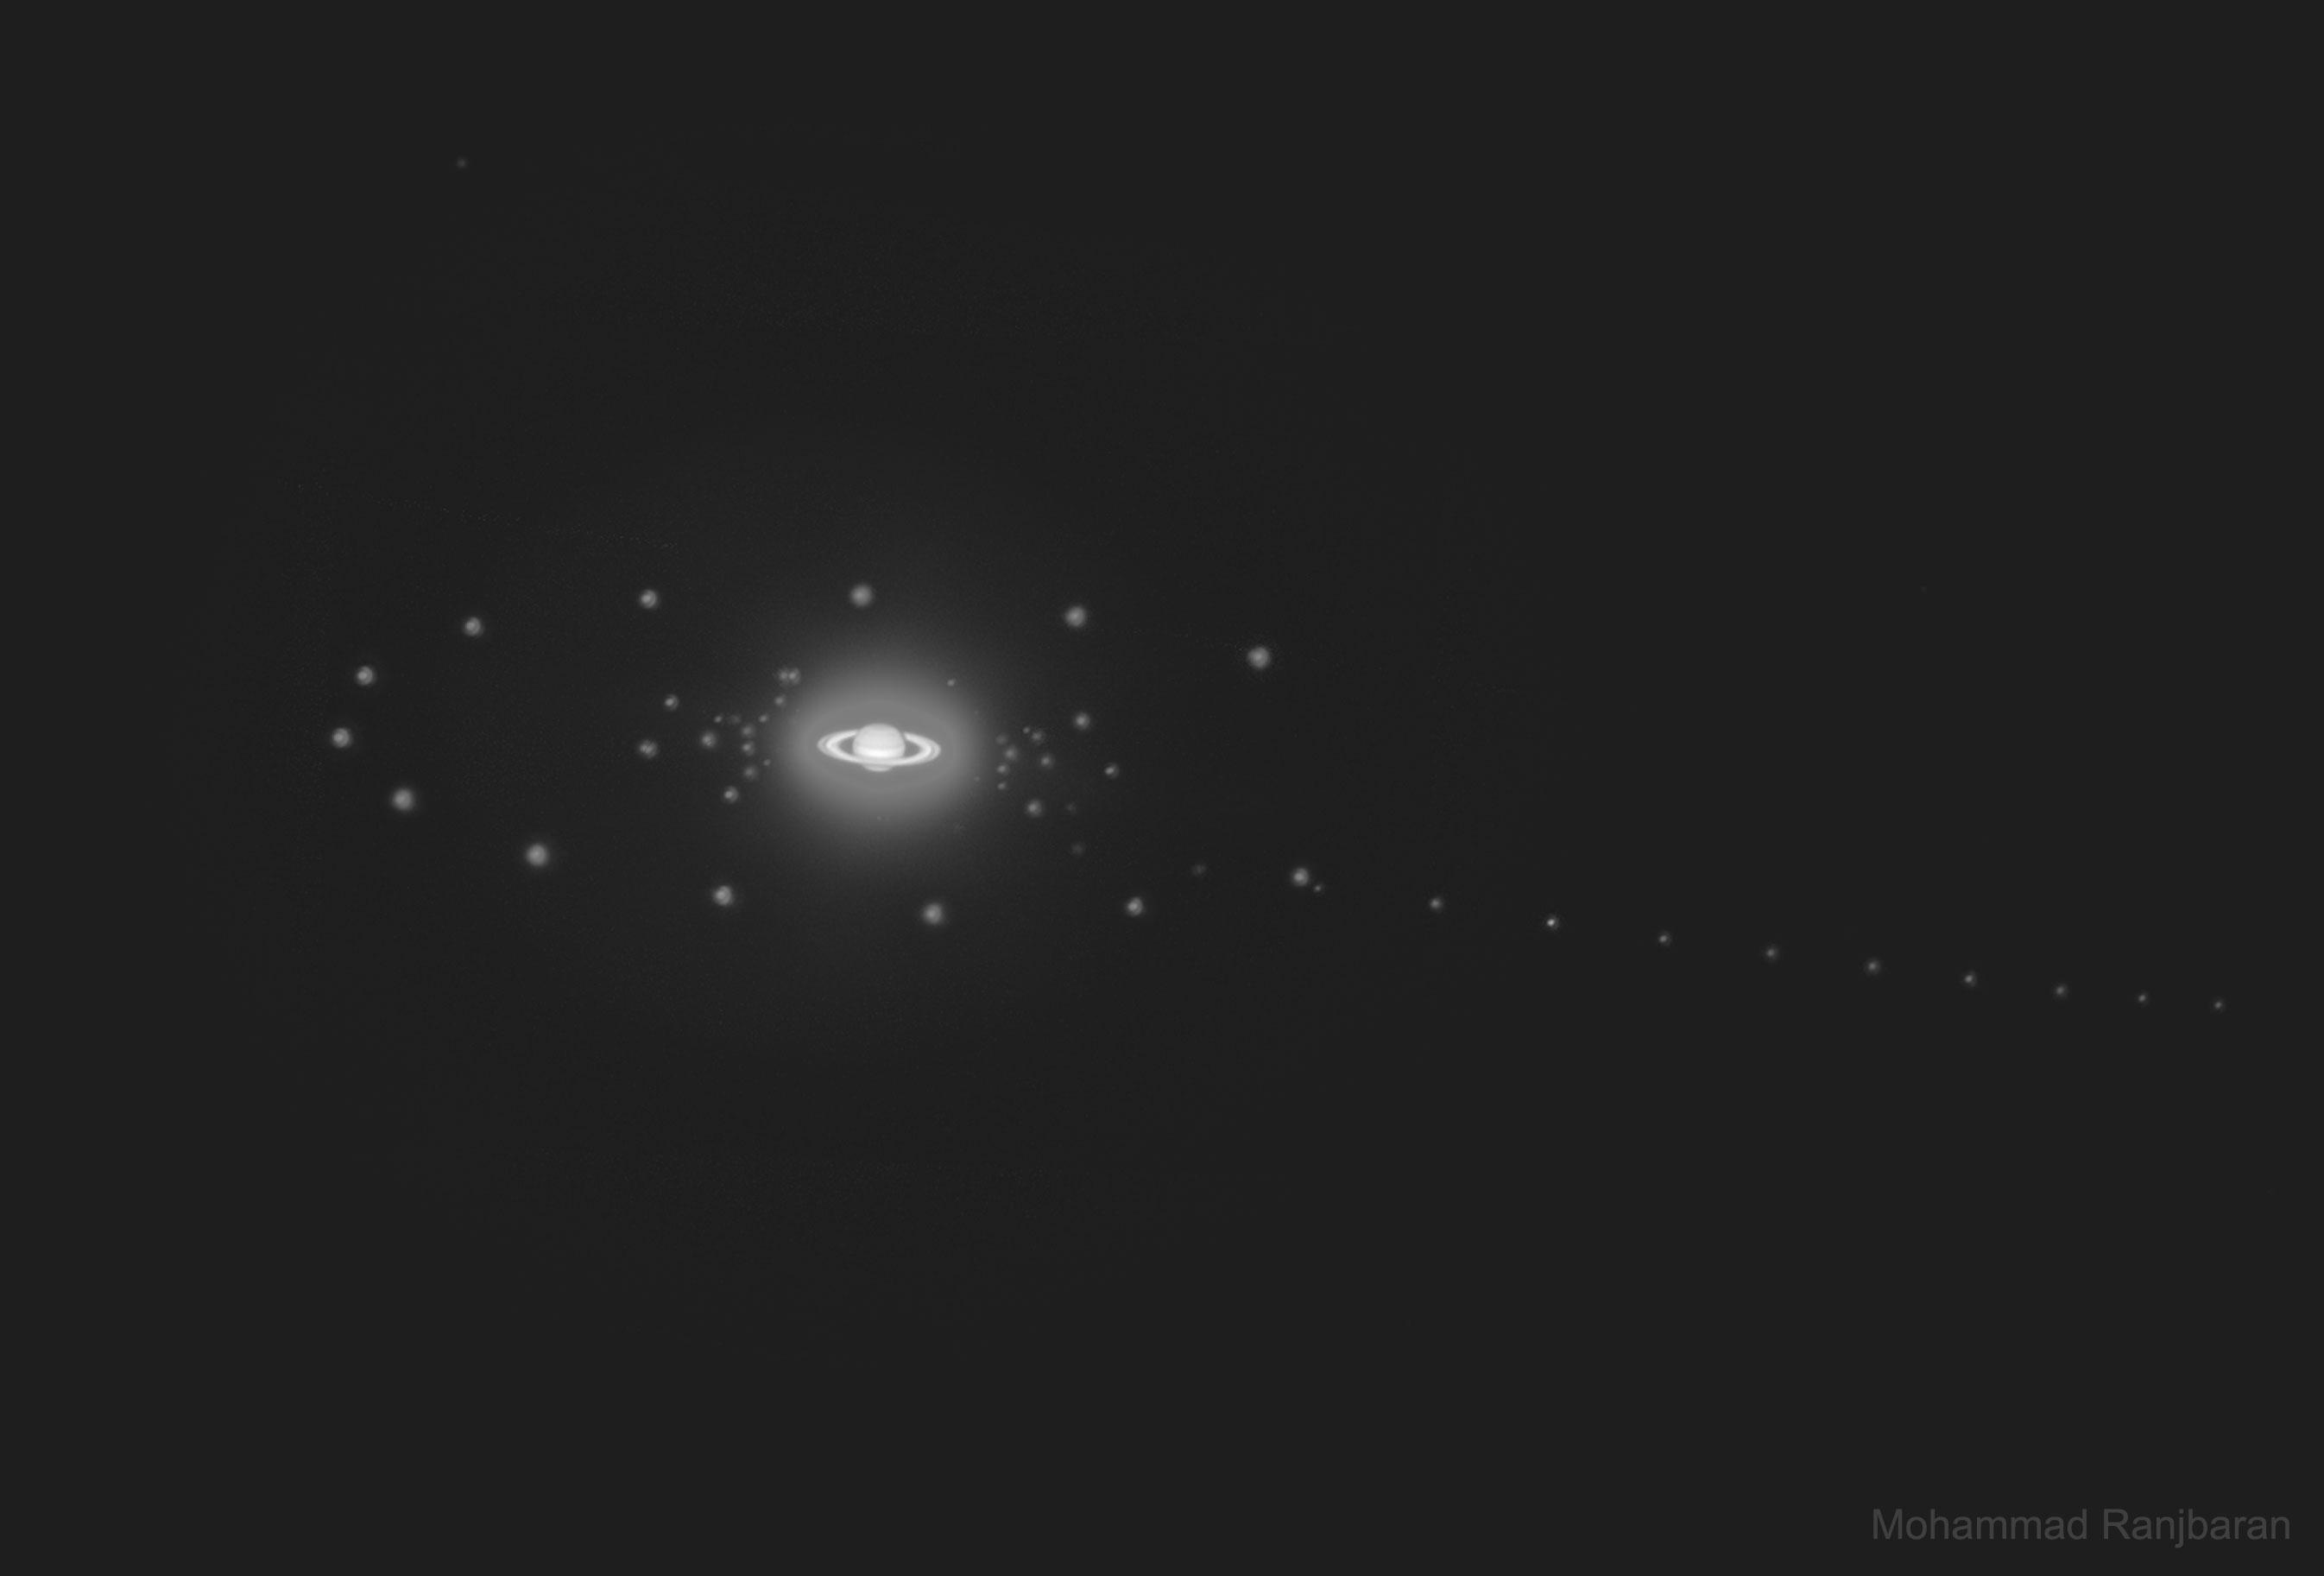 تُظهر الصورة كوكب زحل مع بعض من أقماره، التقطت بعدة تعريضات.